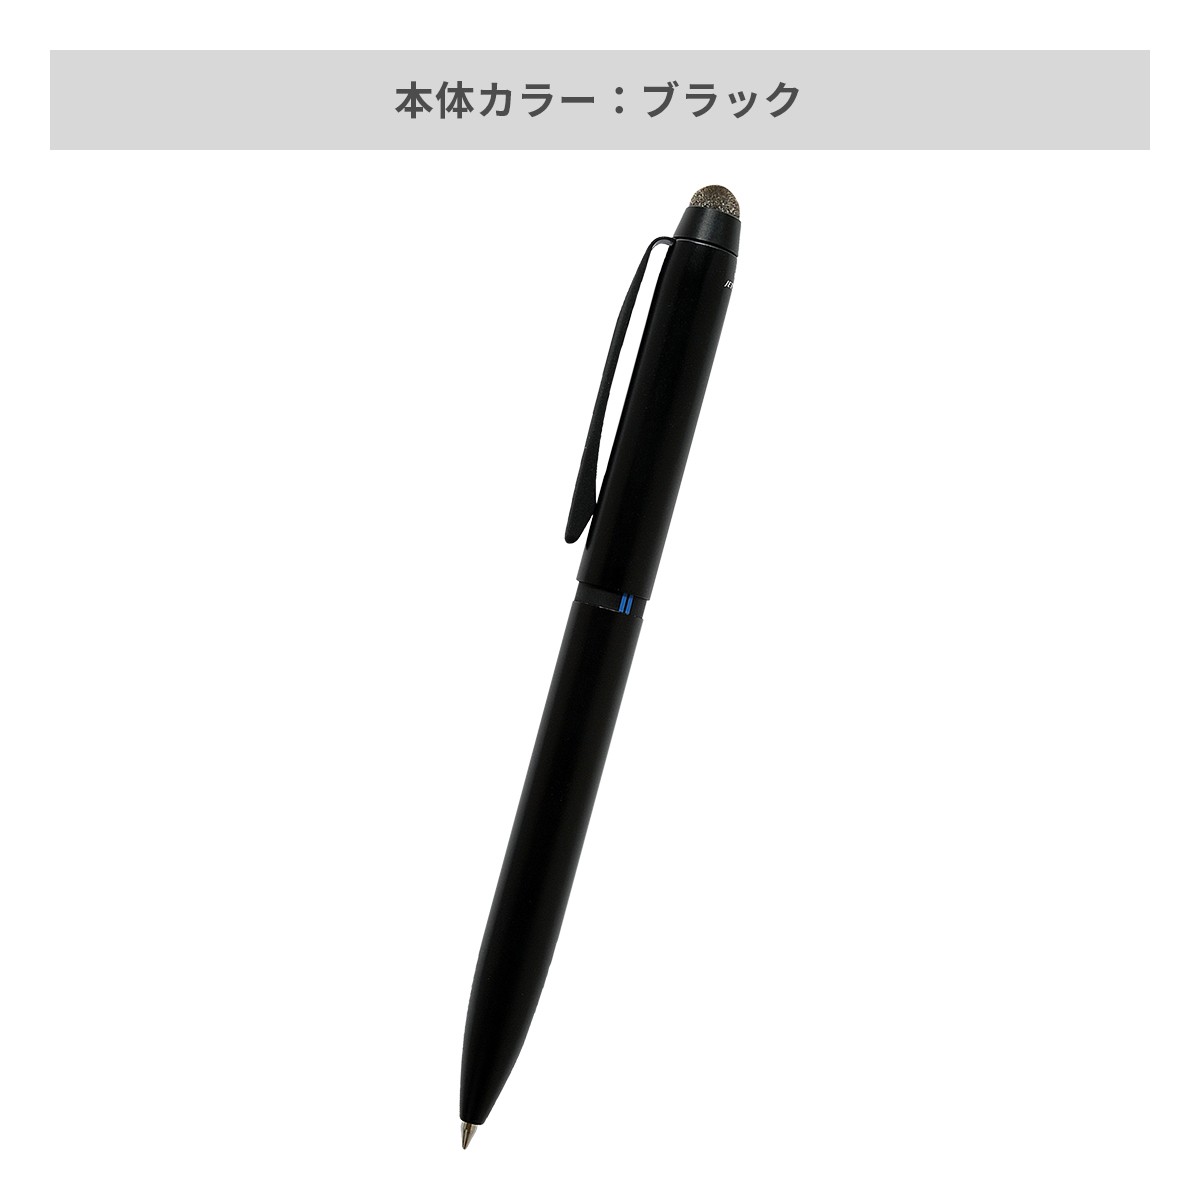 【短納期】三菱鉛筆 ジェットストリーム スタイラス 3色ボールペン 0.5mm【多機能ペン / レーザー彫刻】 画像3